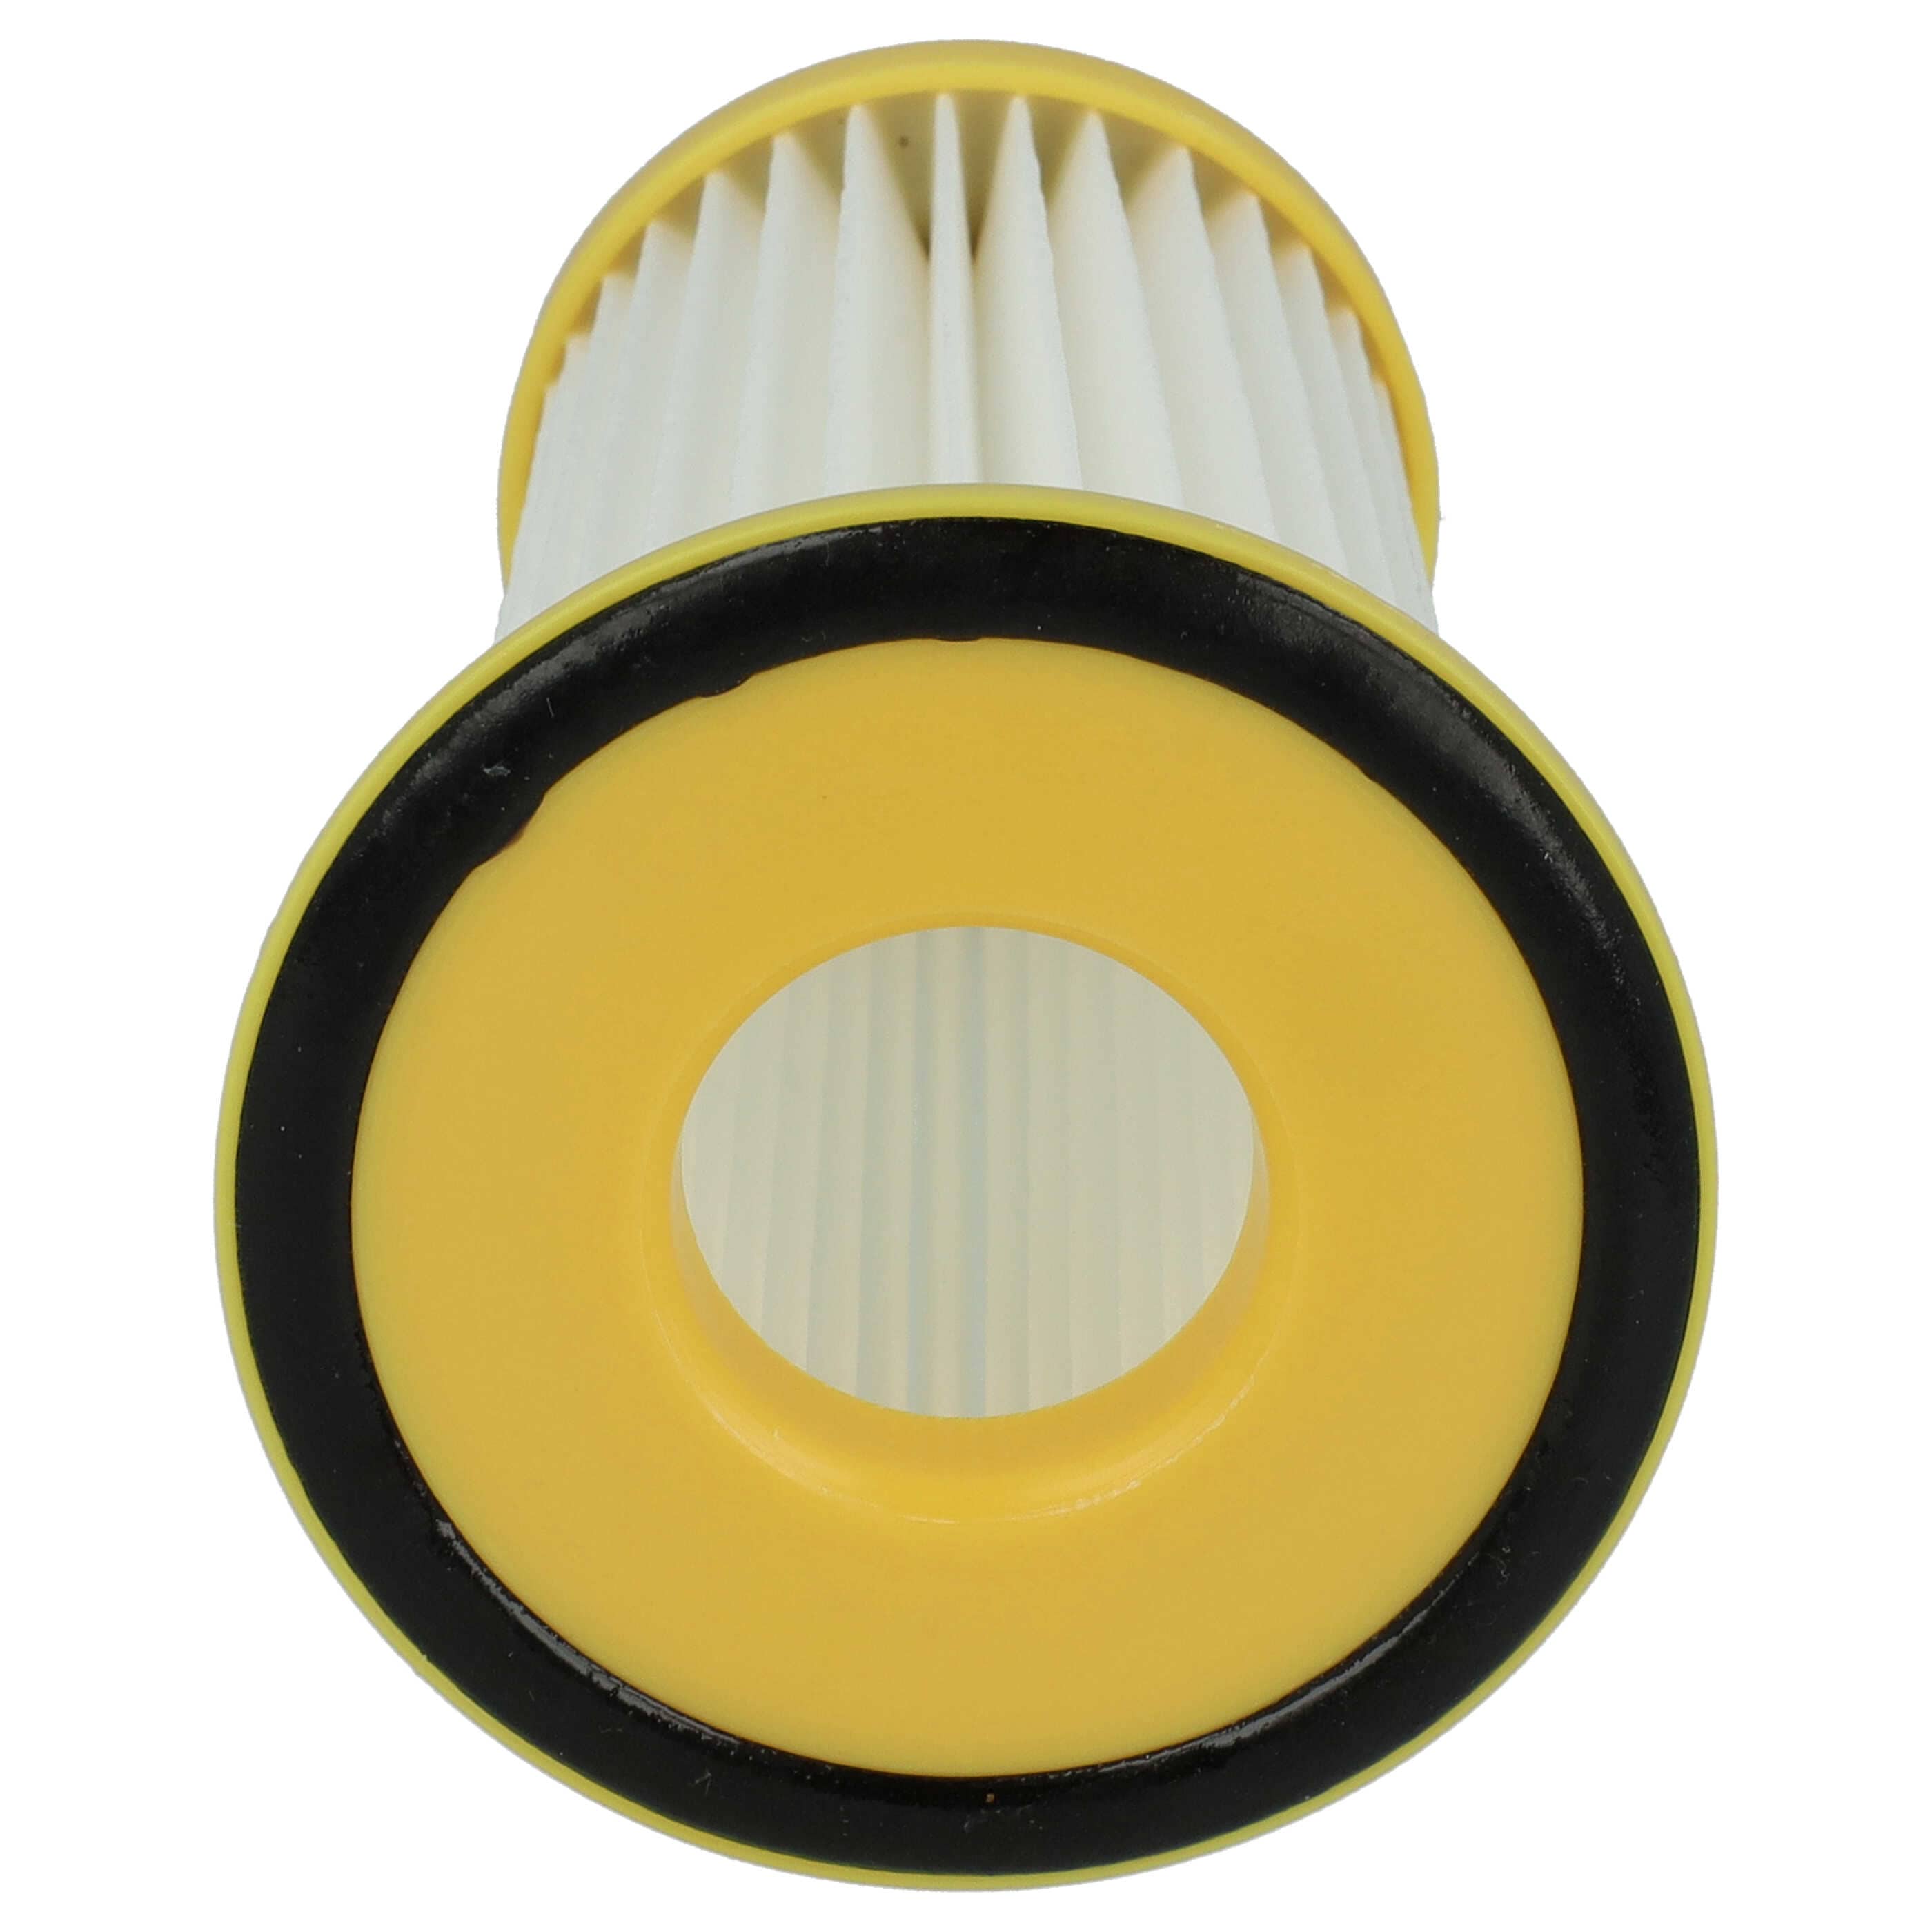 Filtr do odkurzacza Philips zamiennik Philips 432200520850 - wkład filtracyjny, biały / żółty